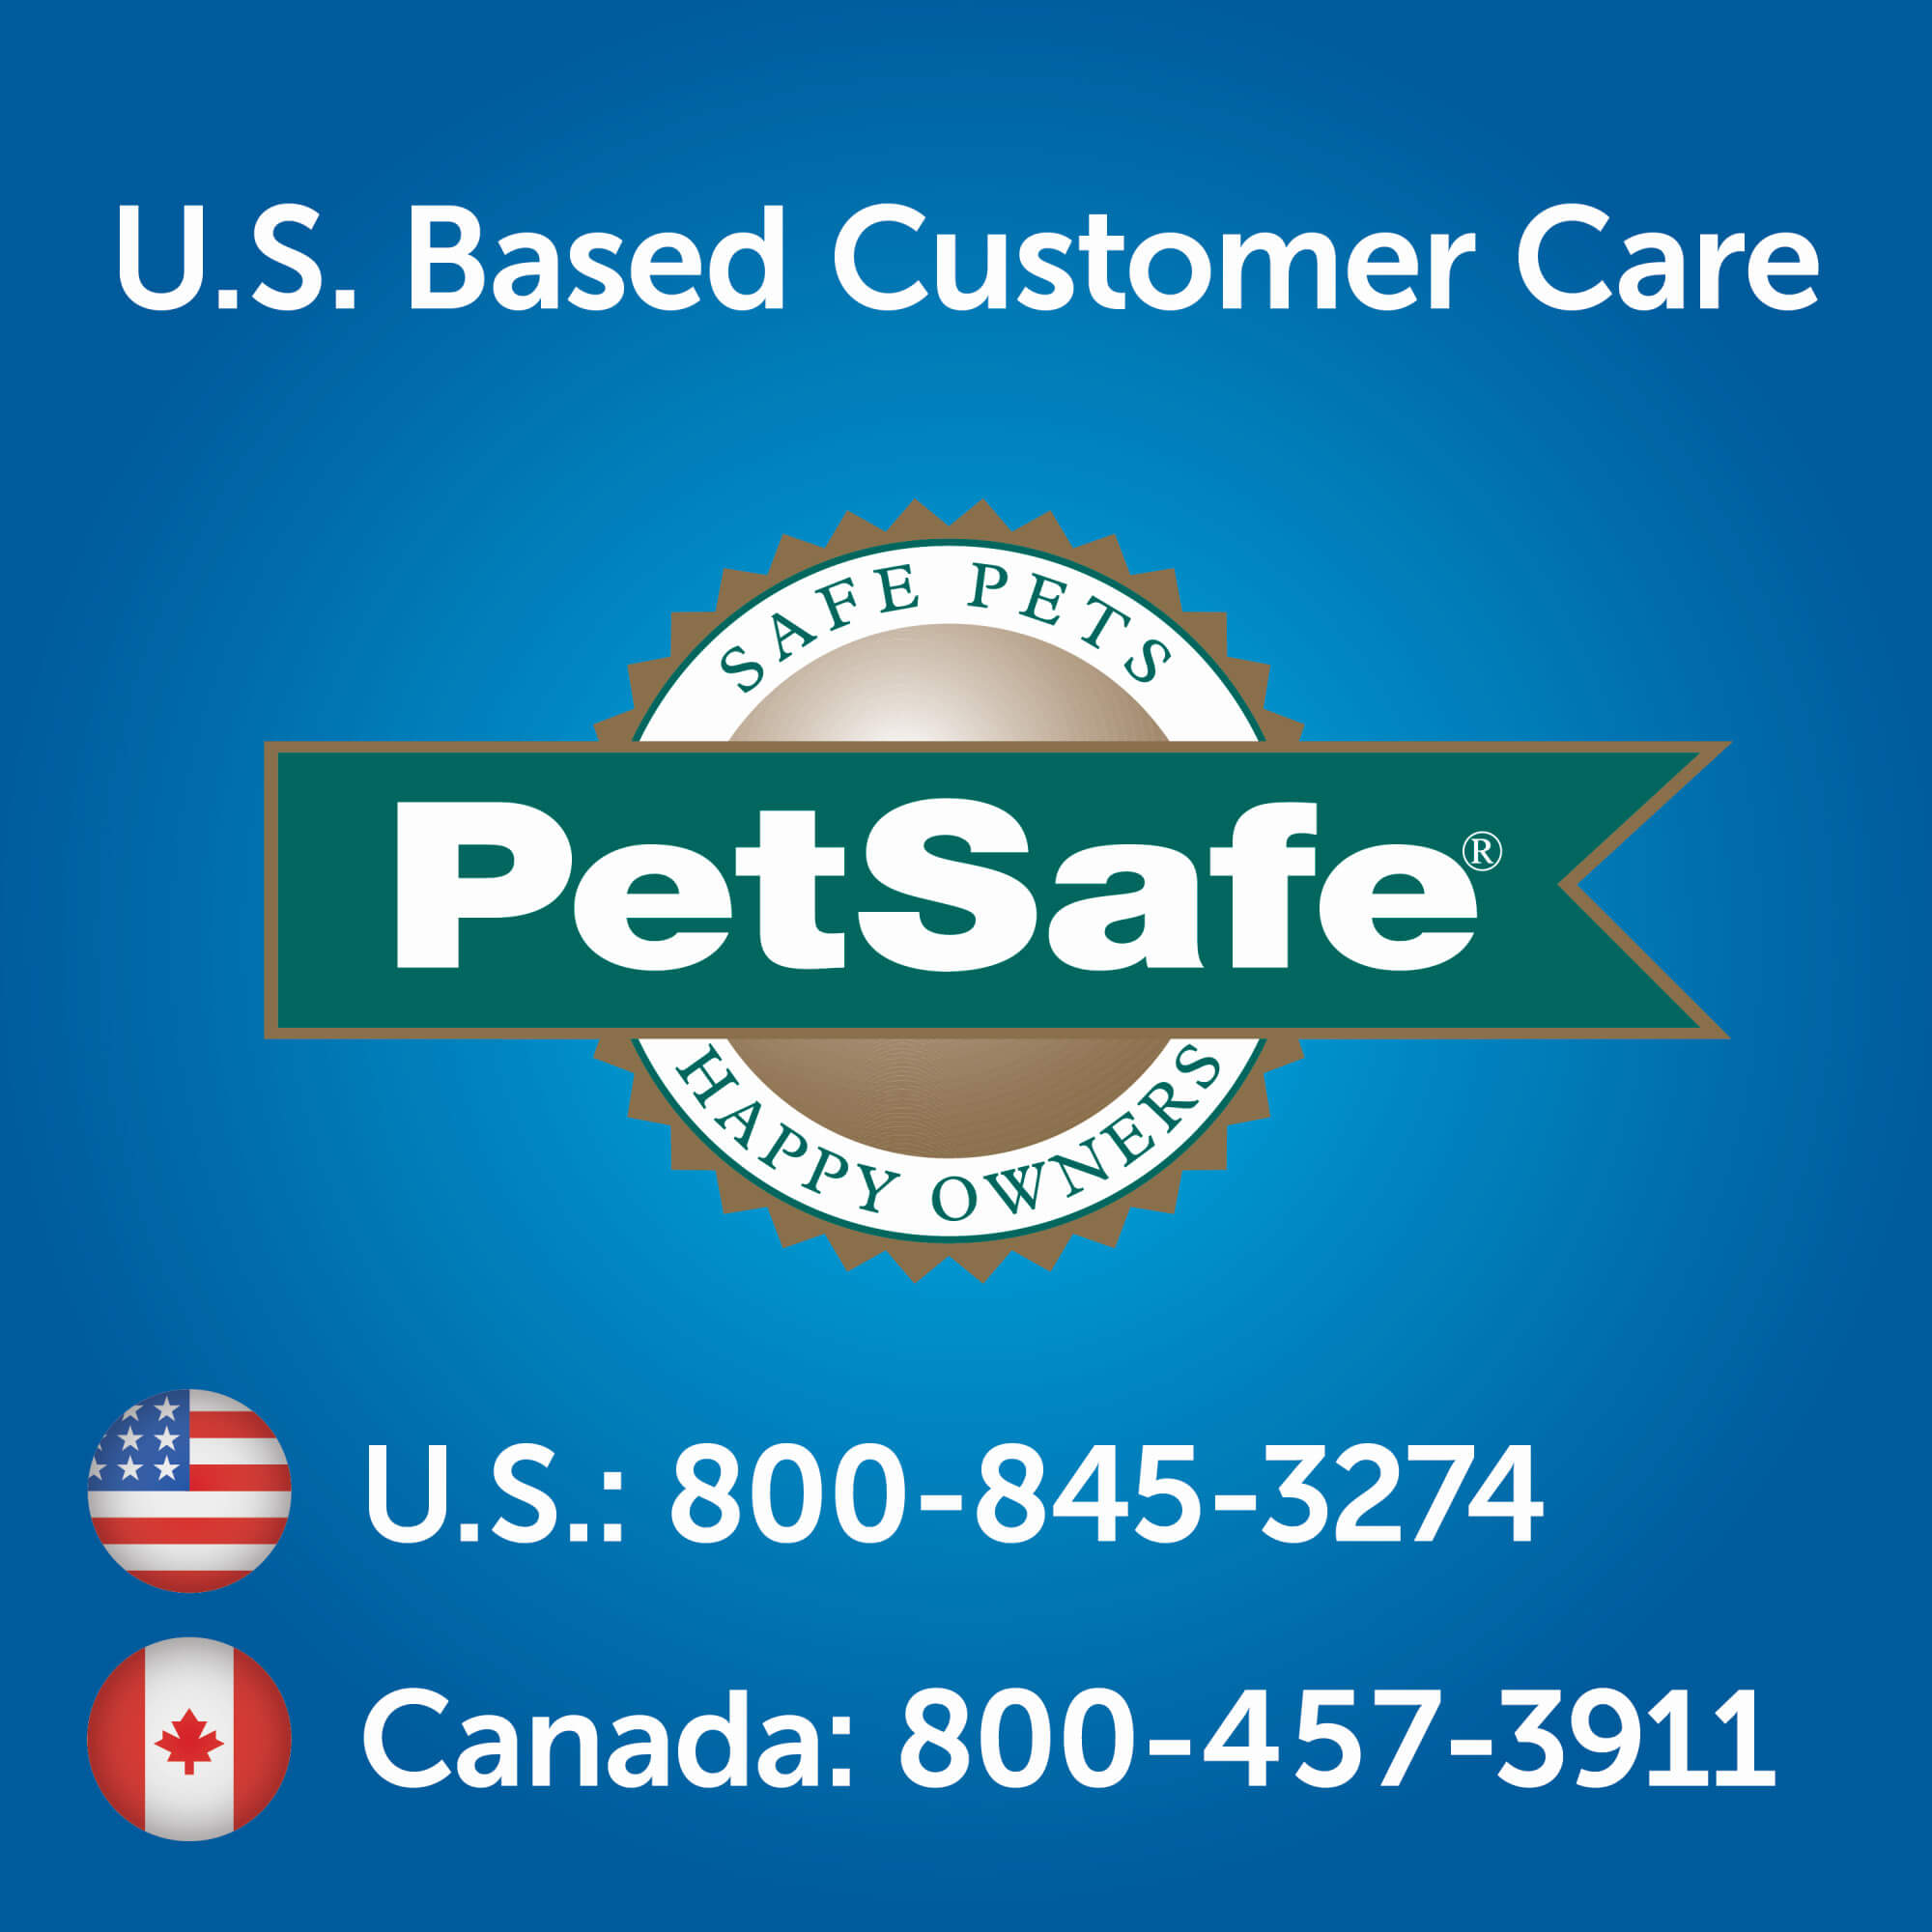 U.S. based customer care